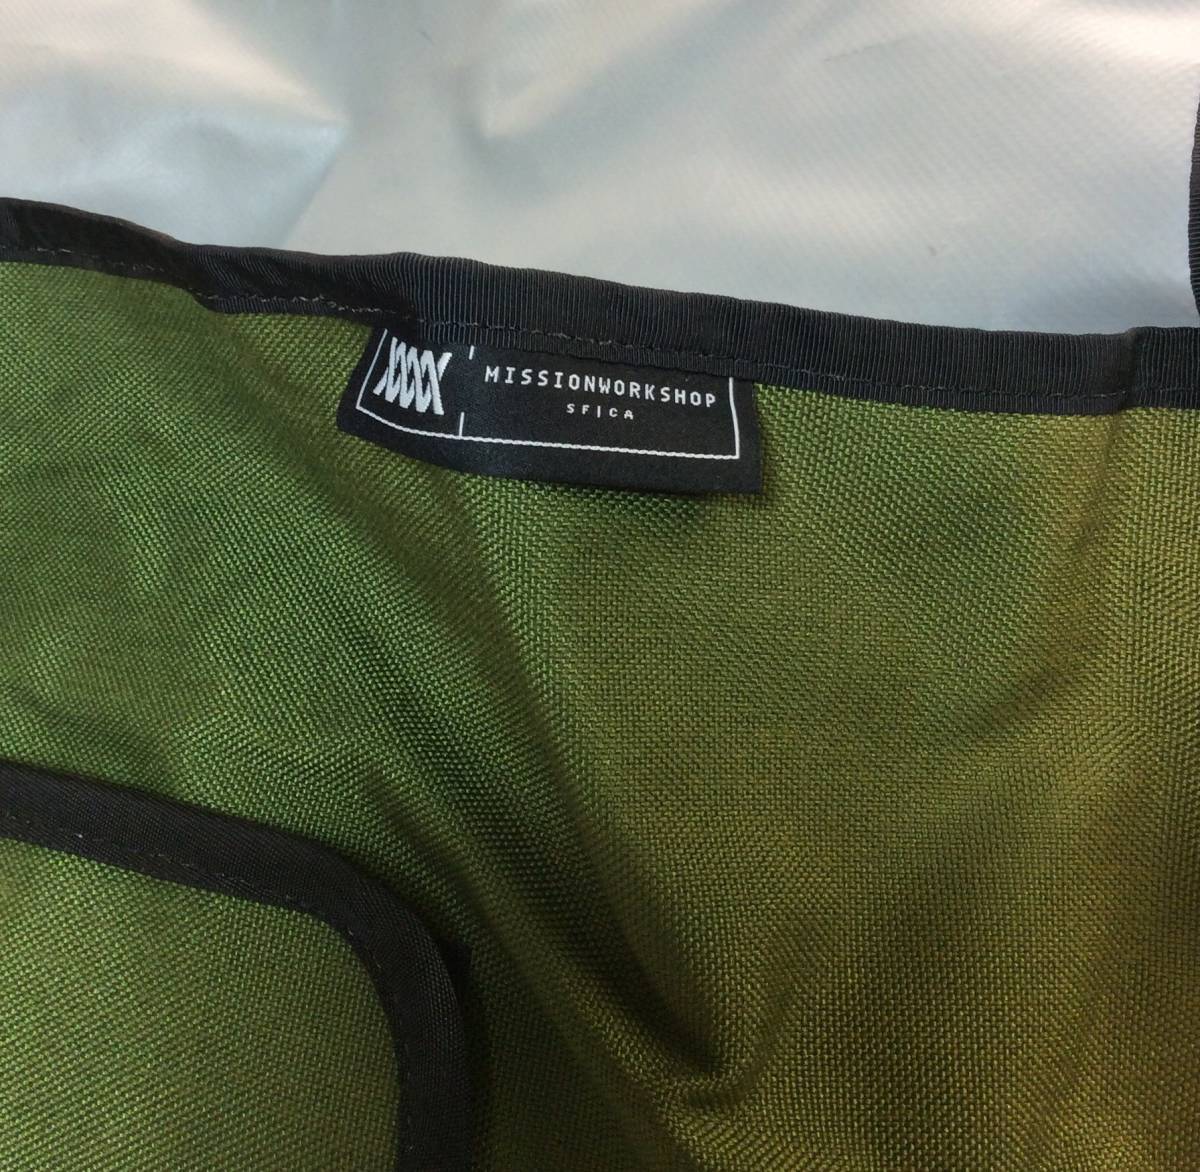 MISSION WORKSHOP mission Work shop Lamy roll top messenger bag shoulder bag green 